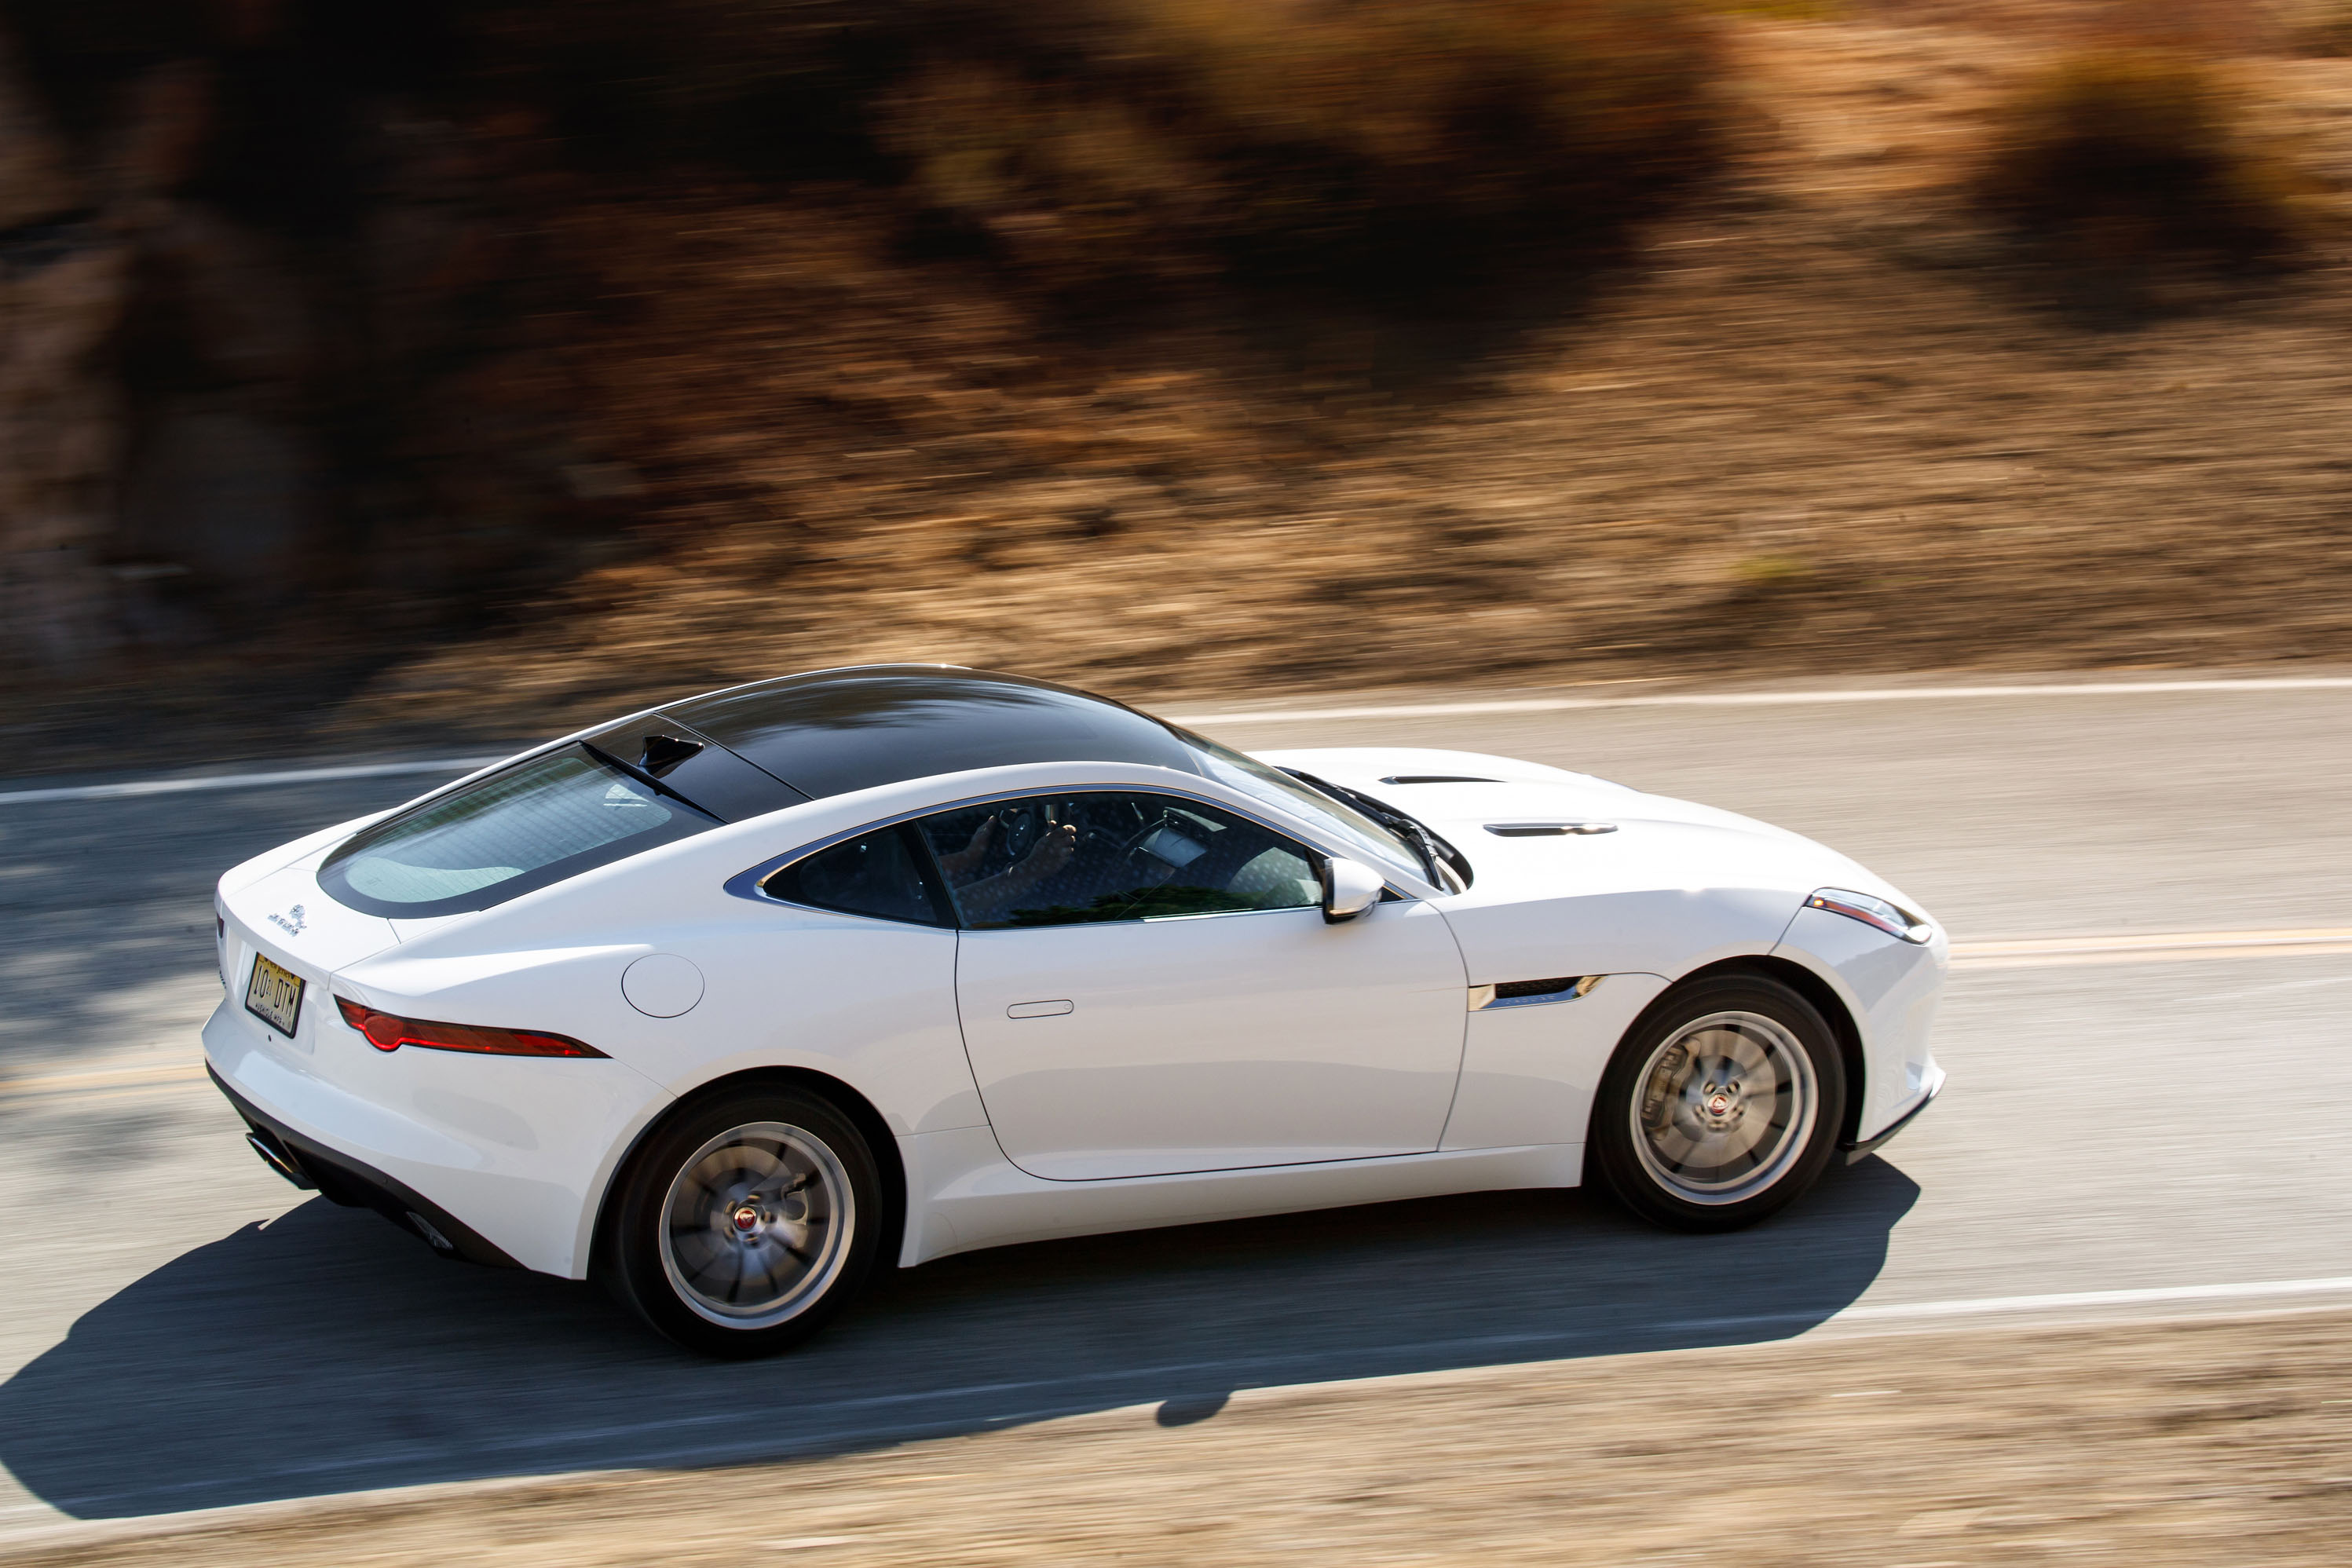 Jaguar F-Type, Lamborghini Urus, Yamaha robot rider: This Week's Top Photos